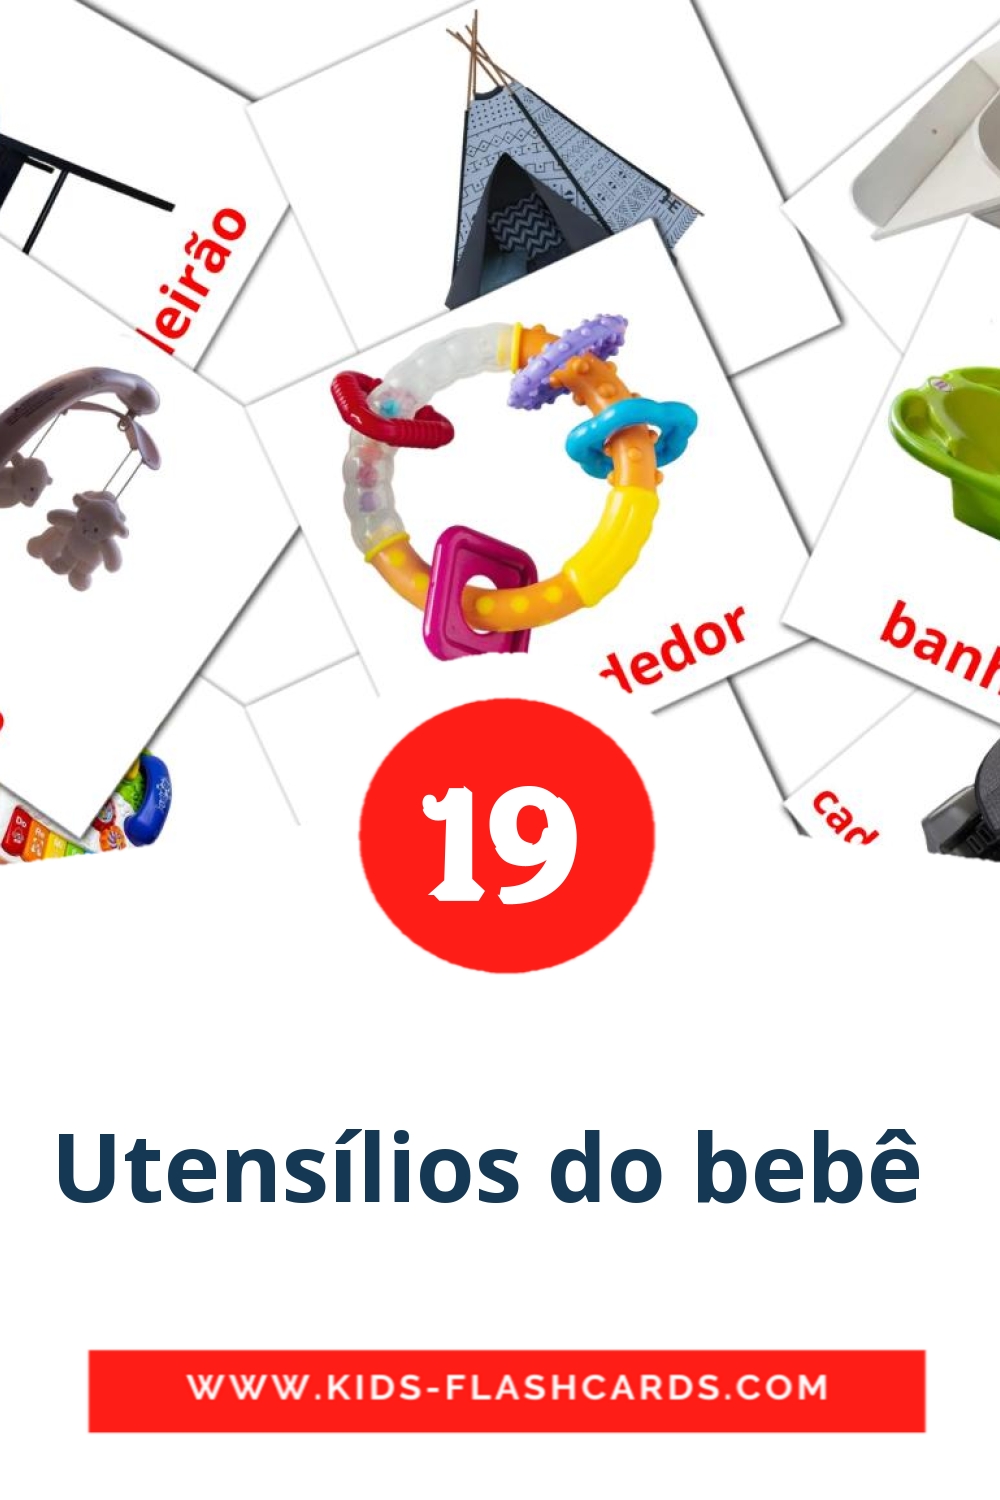 19 Utensílios do bebê  fotokaarten voor kleuters in het ahmaric